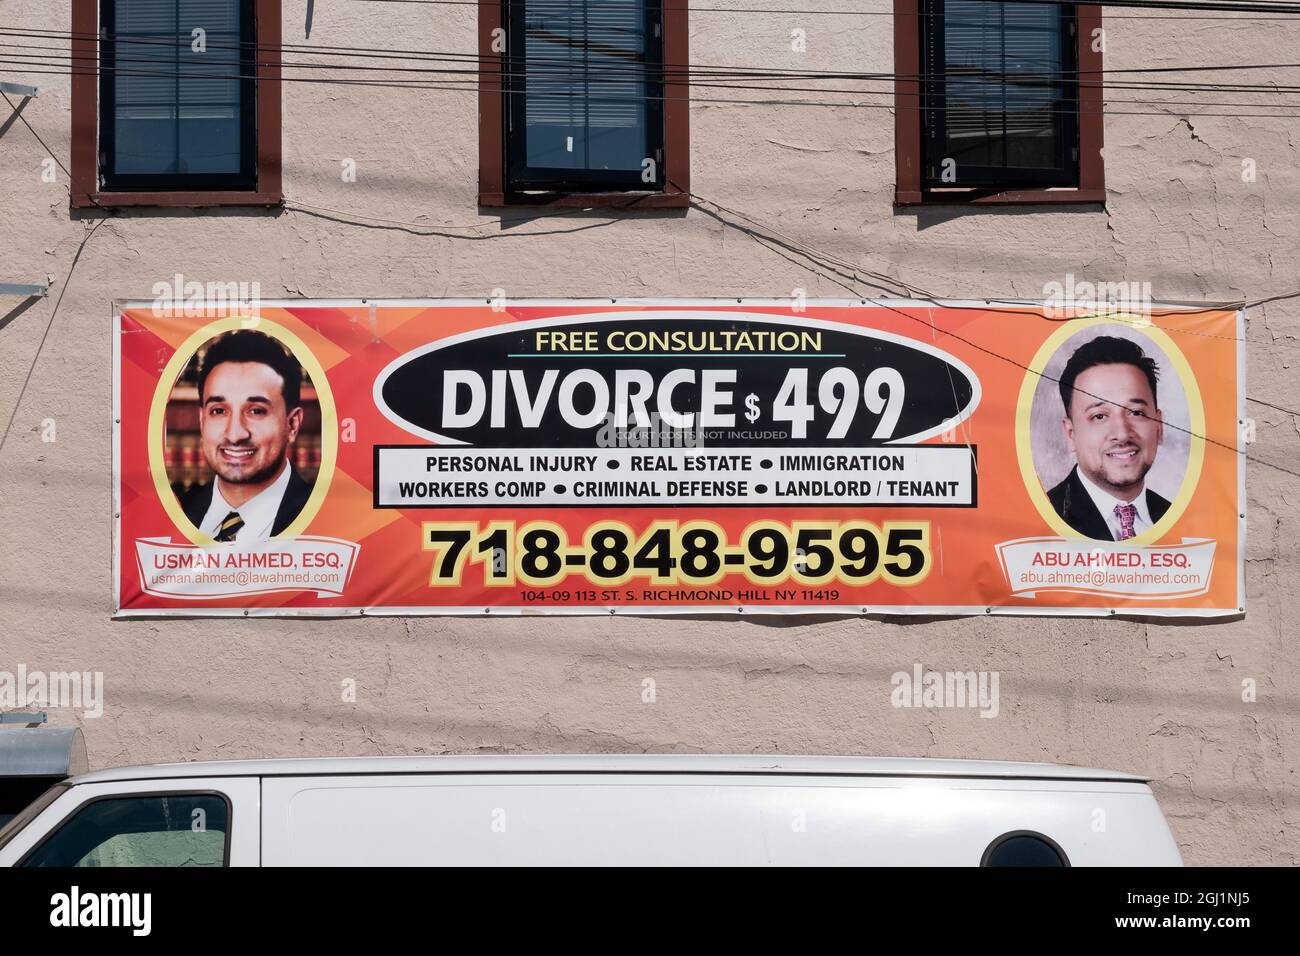 DIVORCE DISCOUNT. Un panneau à South Richmond Hill, Queens pour les divorces peu coûteux. Notez l'impression fine. Banque D'Images